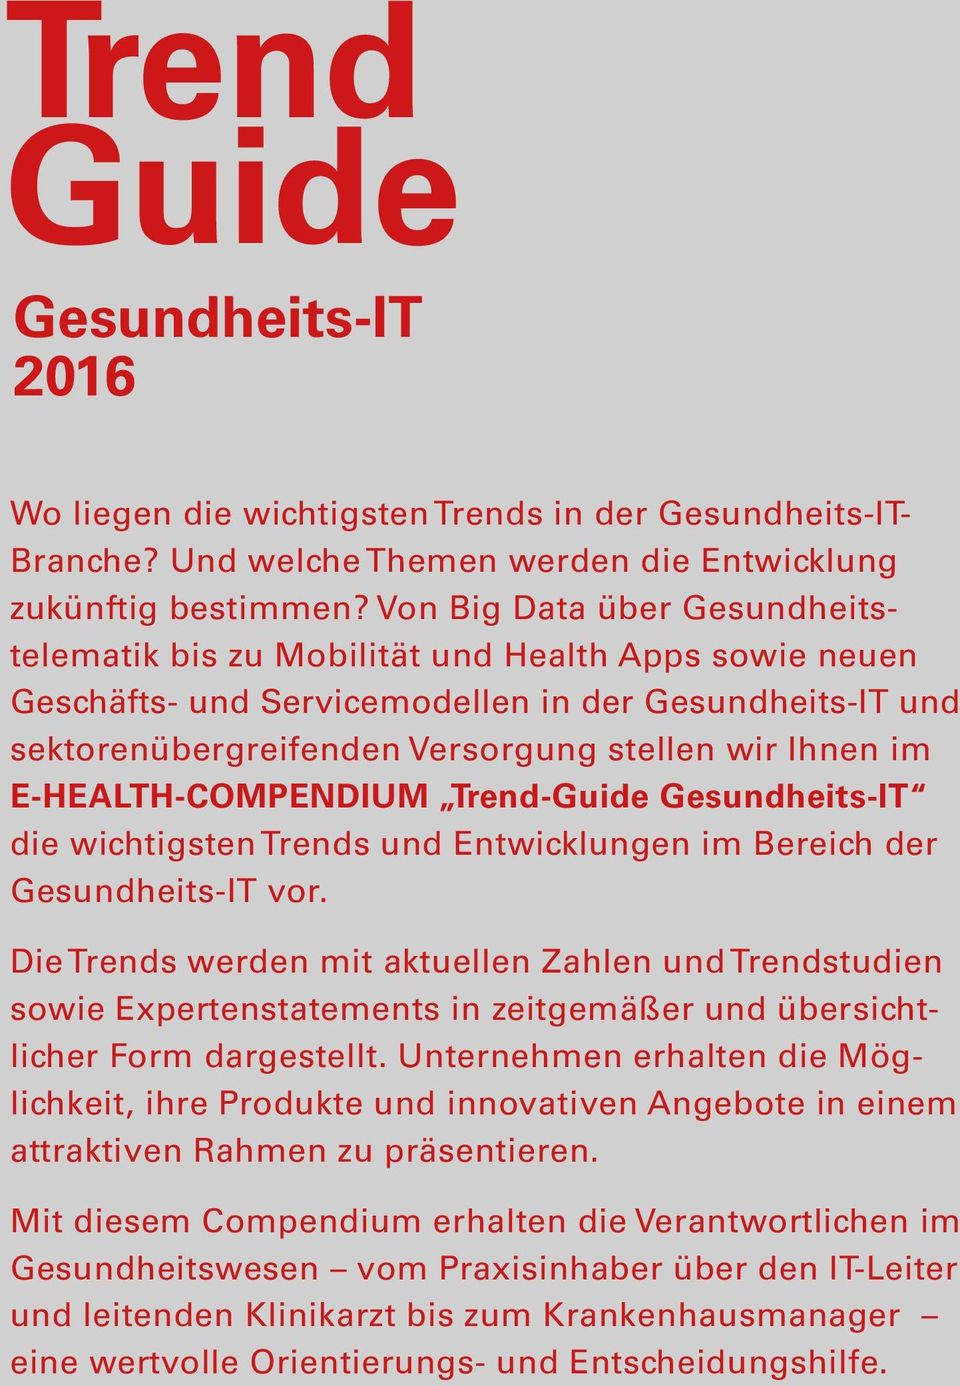 E-HEALTH-COMPENDIUM Trend-Guide Gesundheits-IT die wichtigsten Trends und Entwicklungen im Bereich der Gesundheits-IT vor.